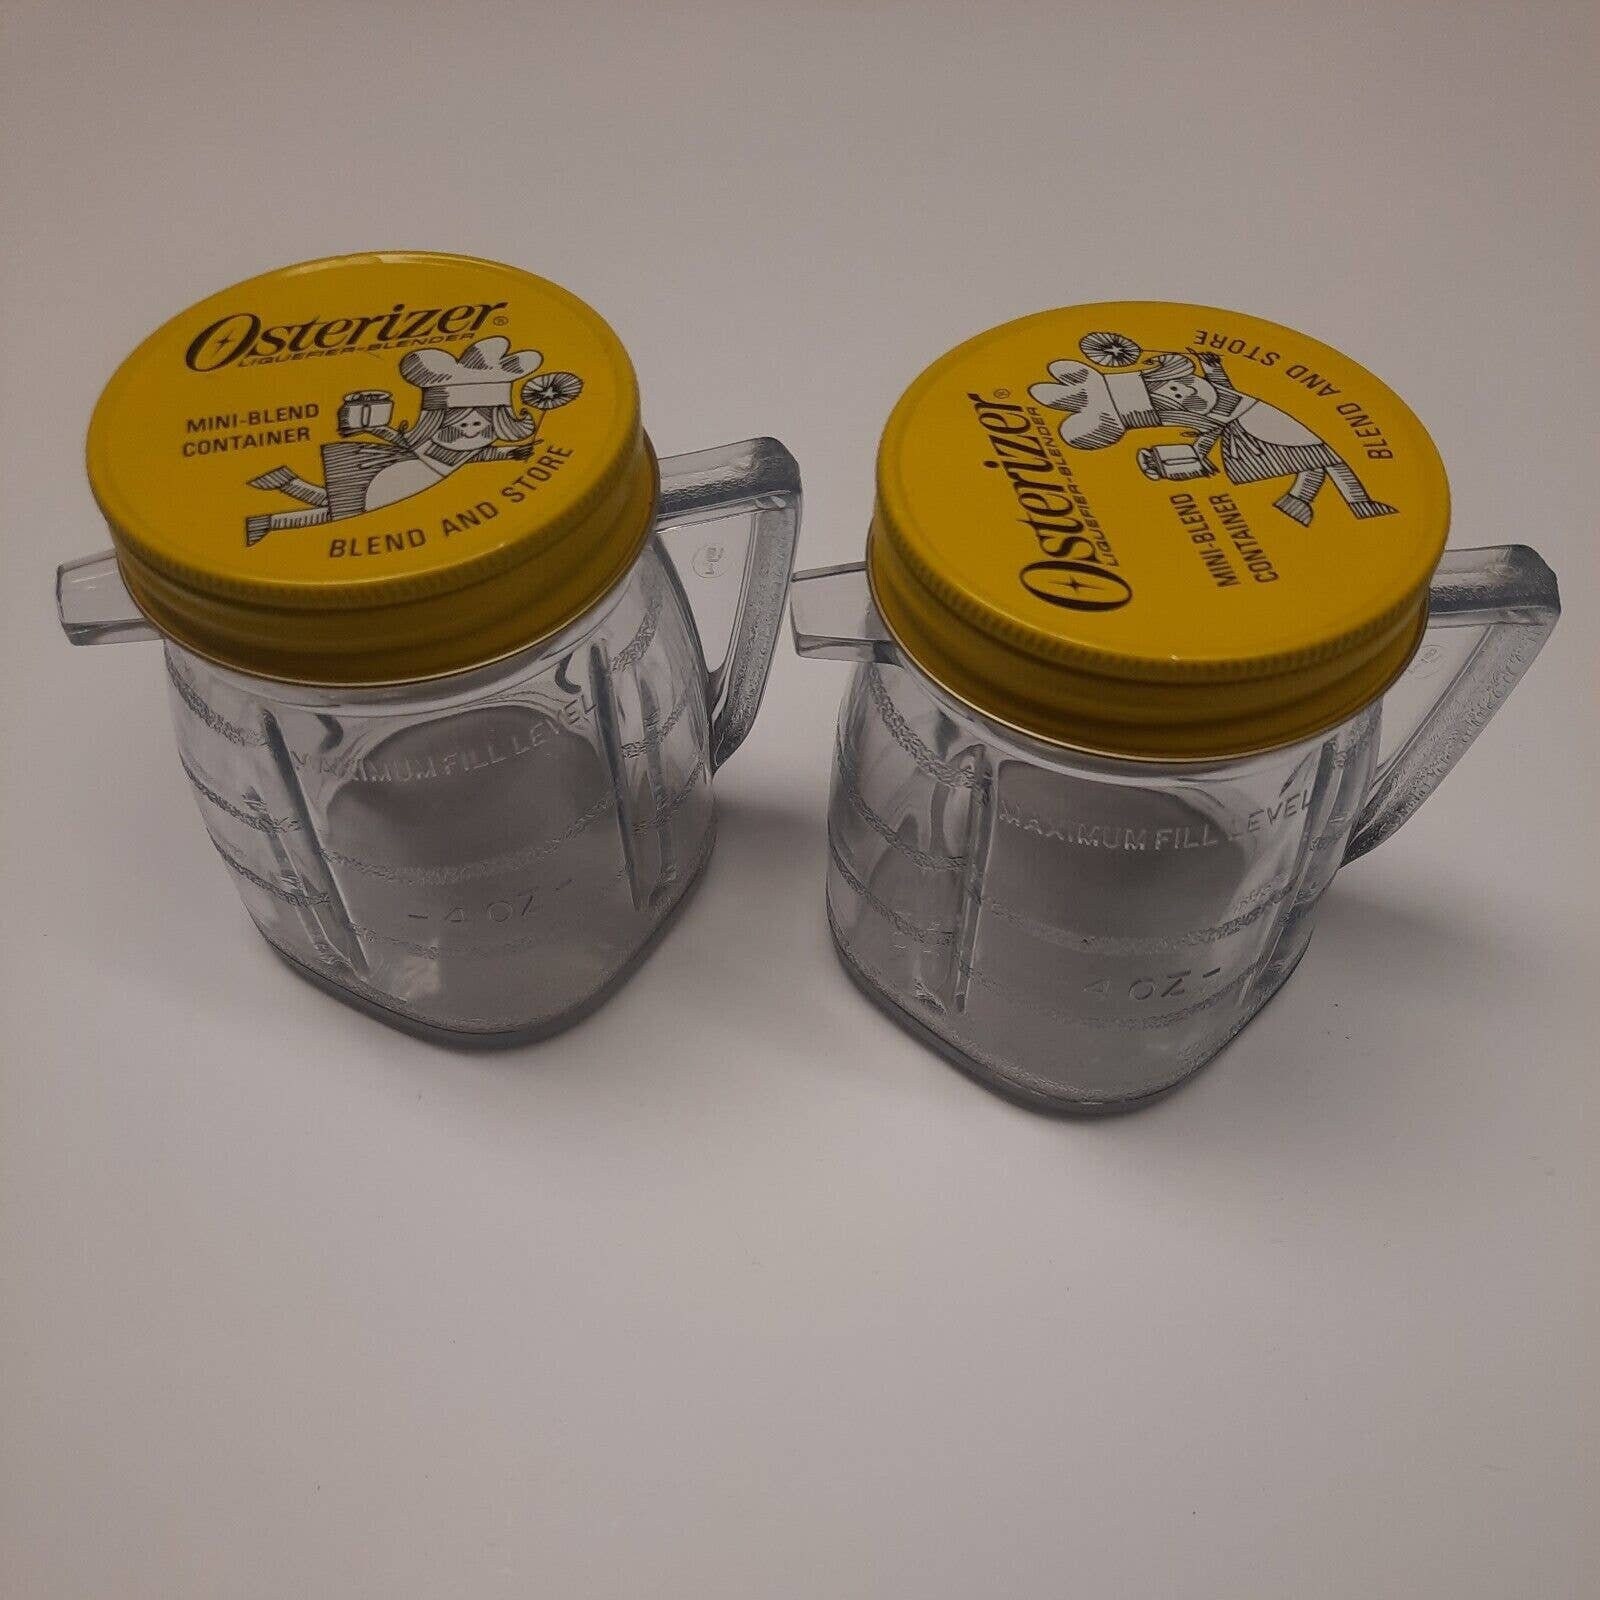 Osterizer Chutney Jar with lid